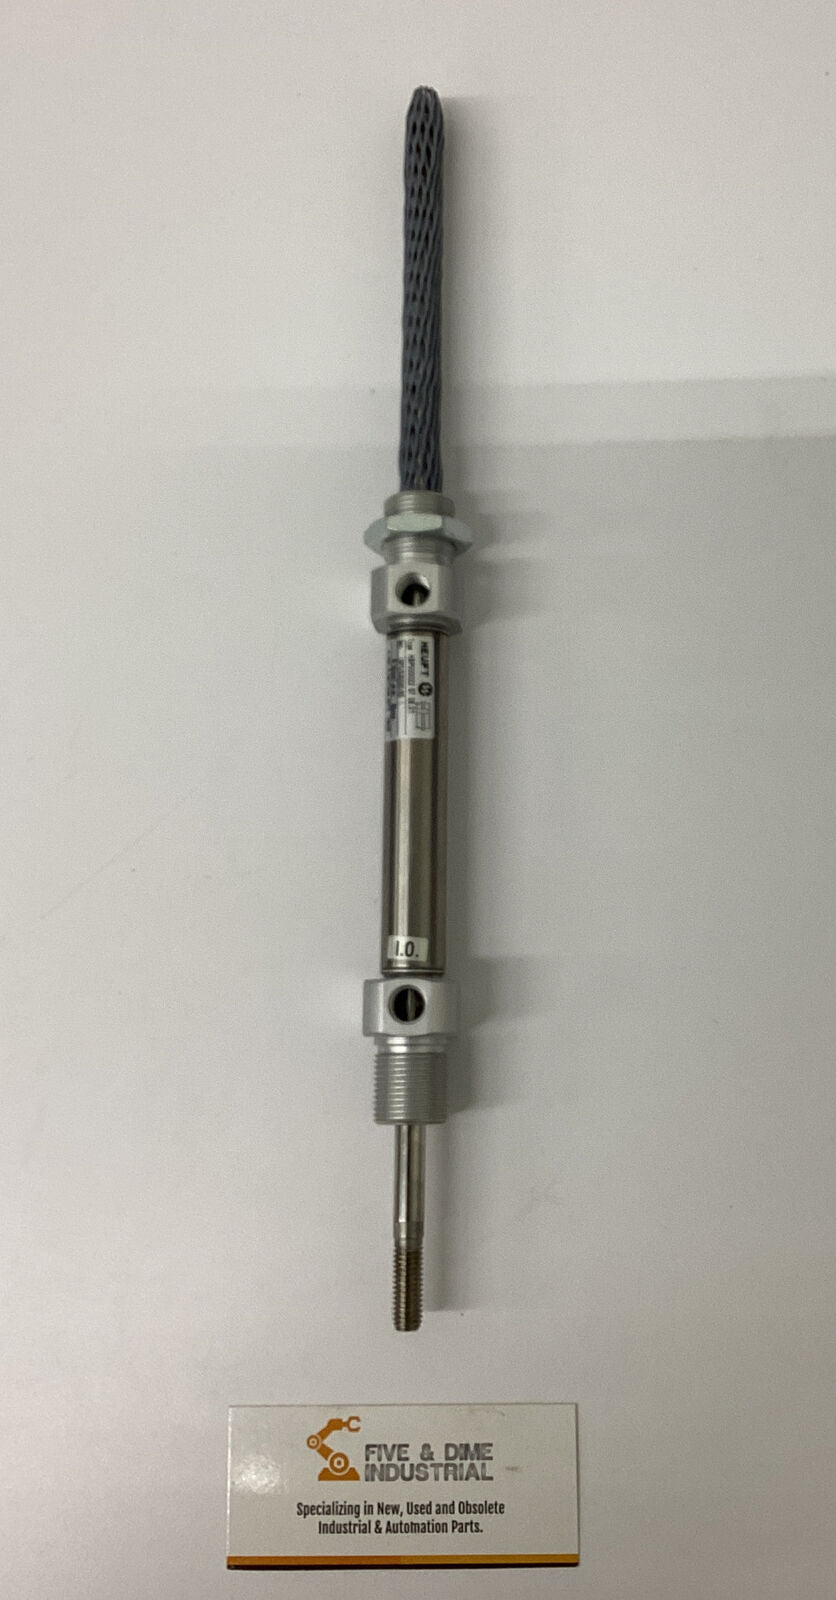 Heuft  HBP000022 Pneumatic Cylinder 16mm-65mm  (YE194)